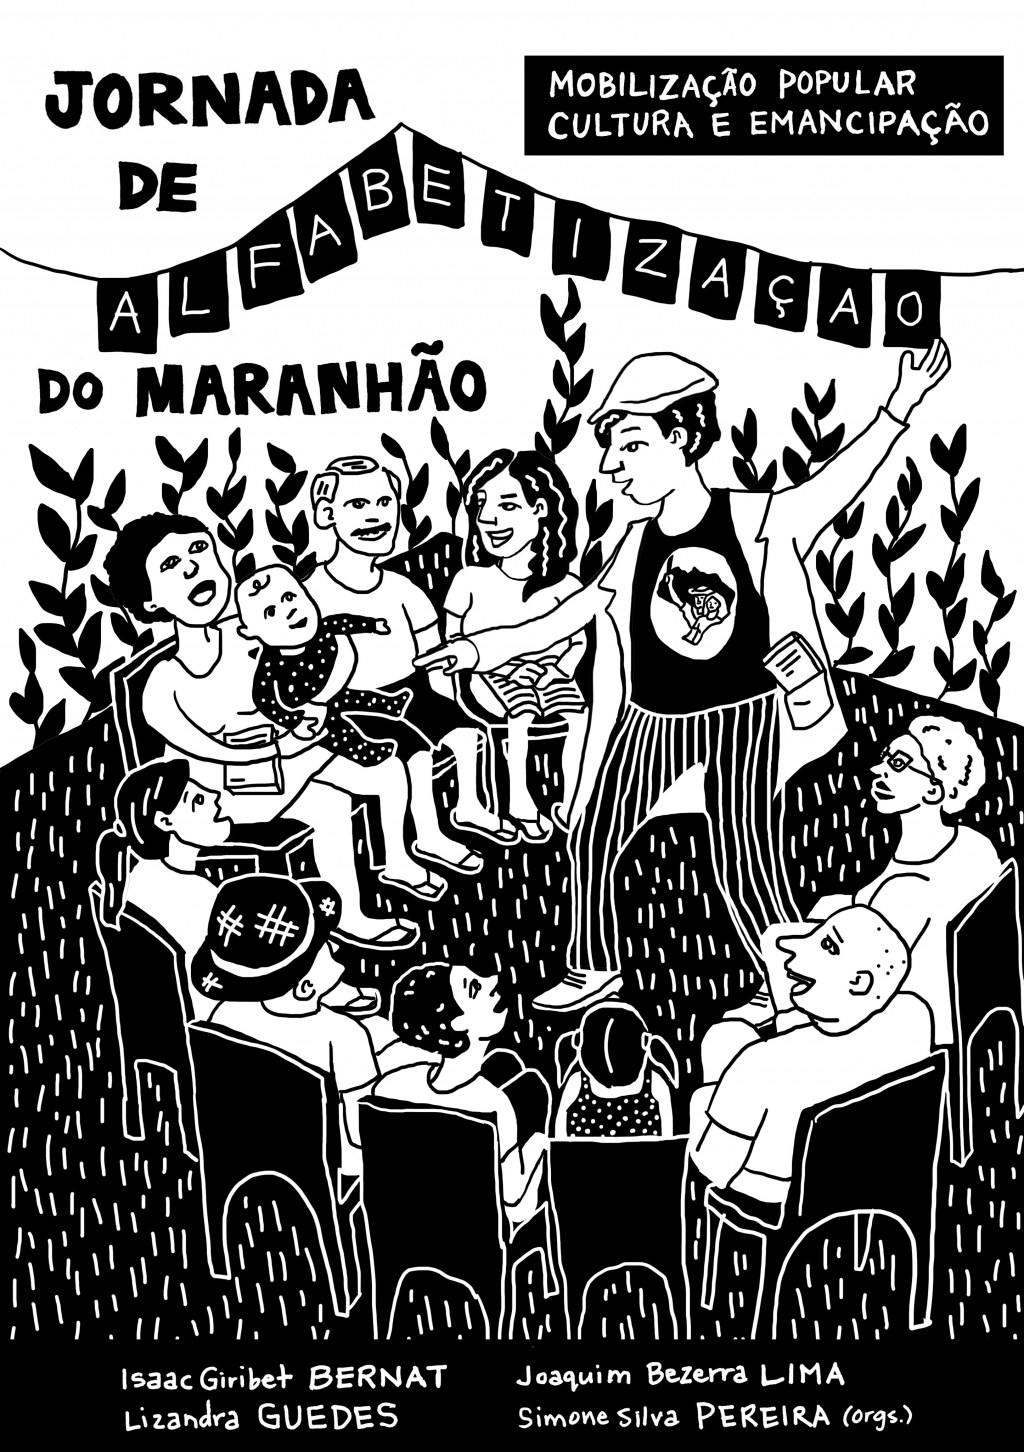 Jornada de Alfabetização do Maranhão: Mobilização Popular, Cultura e Emancipação (DISPONÍVEL PARA DOWNLOAD)